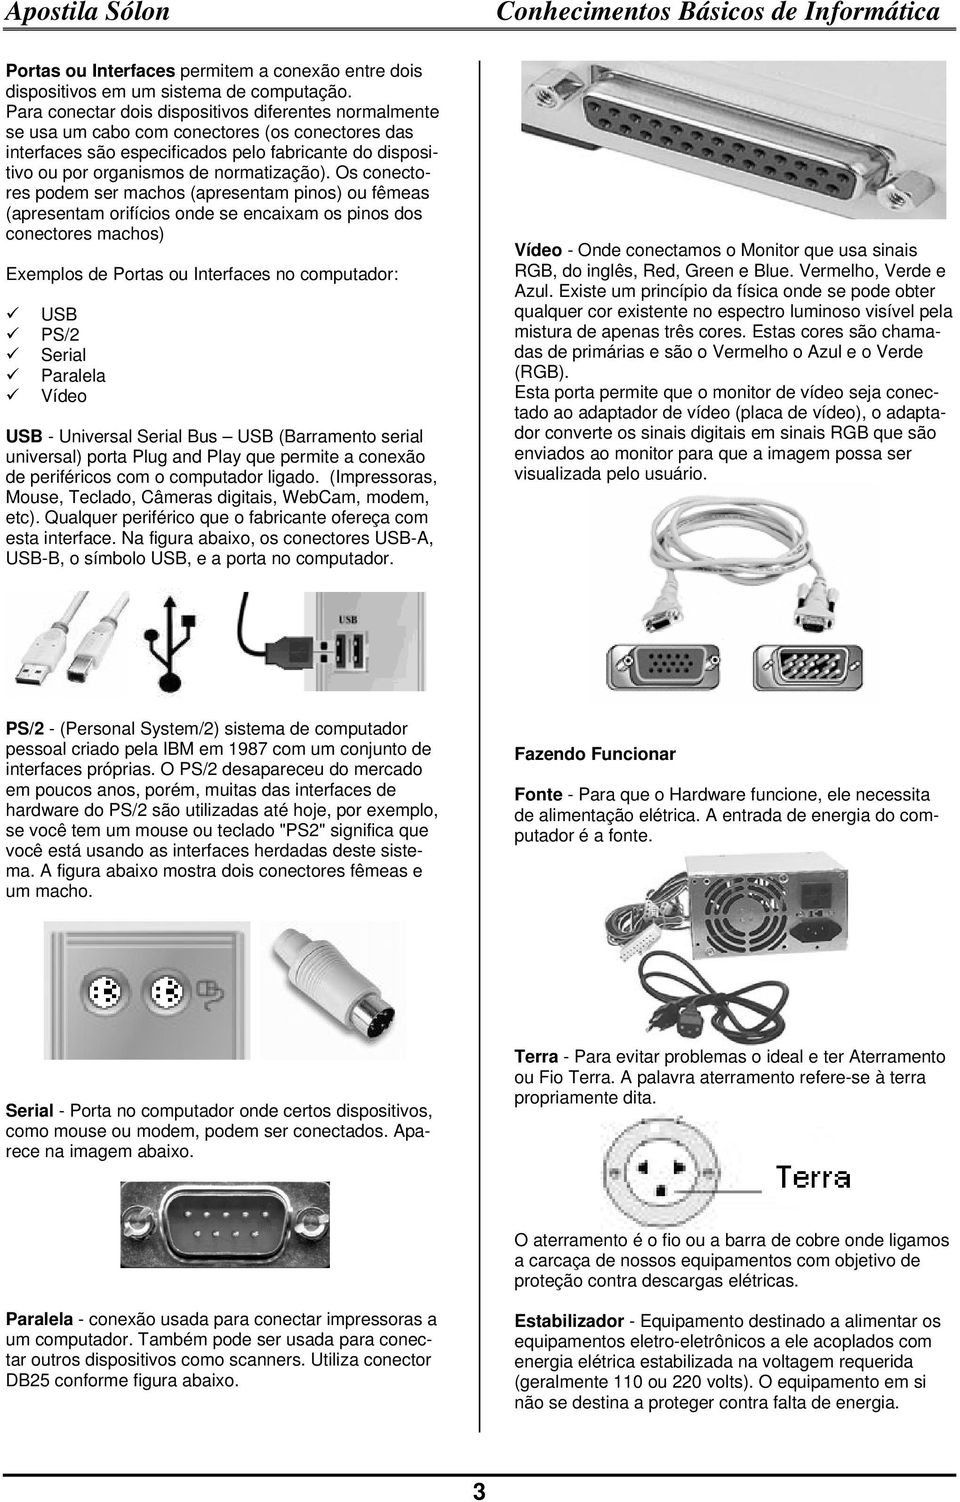 Os conectores podem ser machos (apresentam pinos) ou fêmeas (apresentam orifícios onde se encaixam os pinos dos conectores machos) Exemplos de Portas ou Interfaces no computador: USB PS/2 Serial